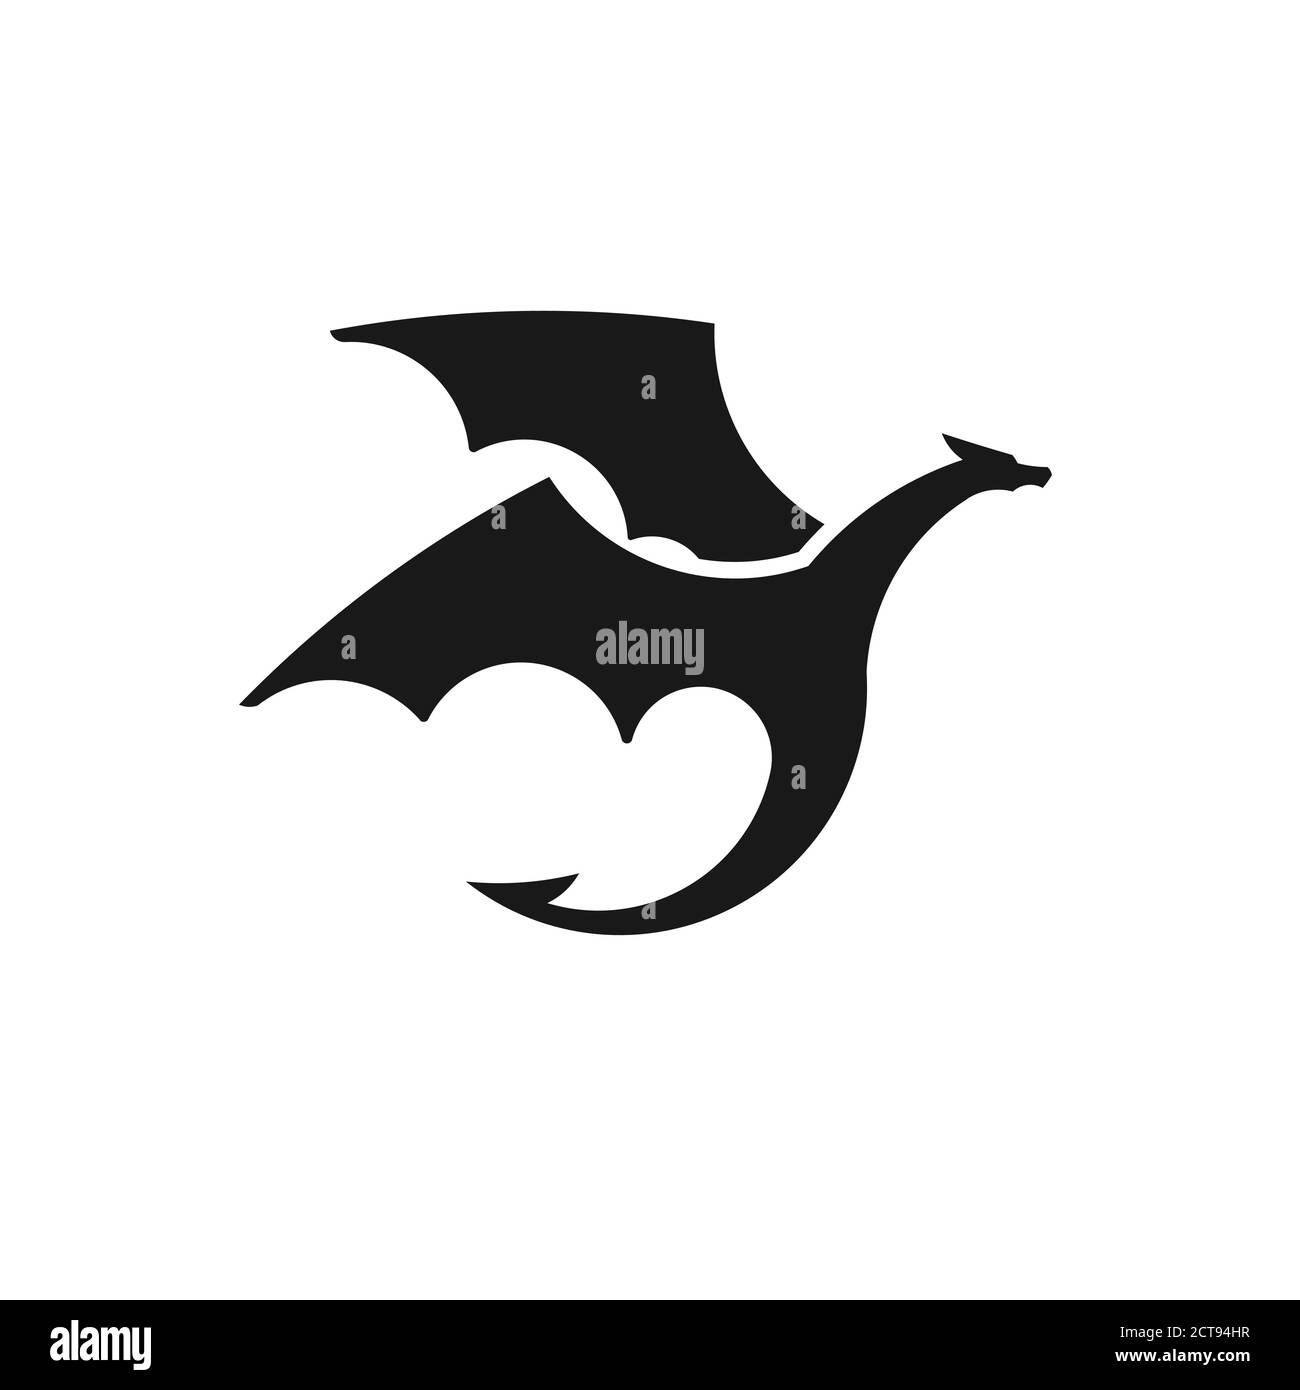 Illustrazioni vettoriali stilizzate nere del logo delle sagome dei draghi Illustrazione Vettoriale